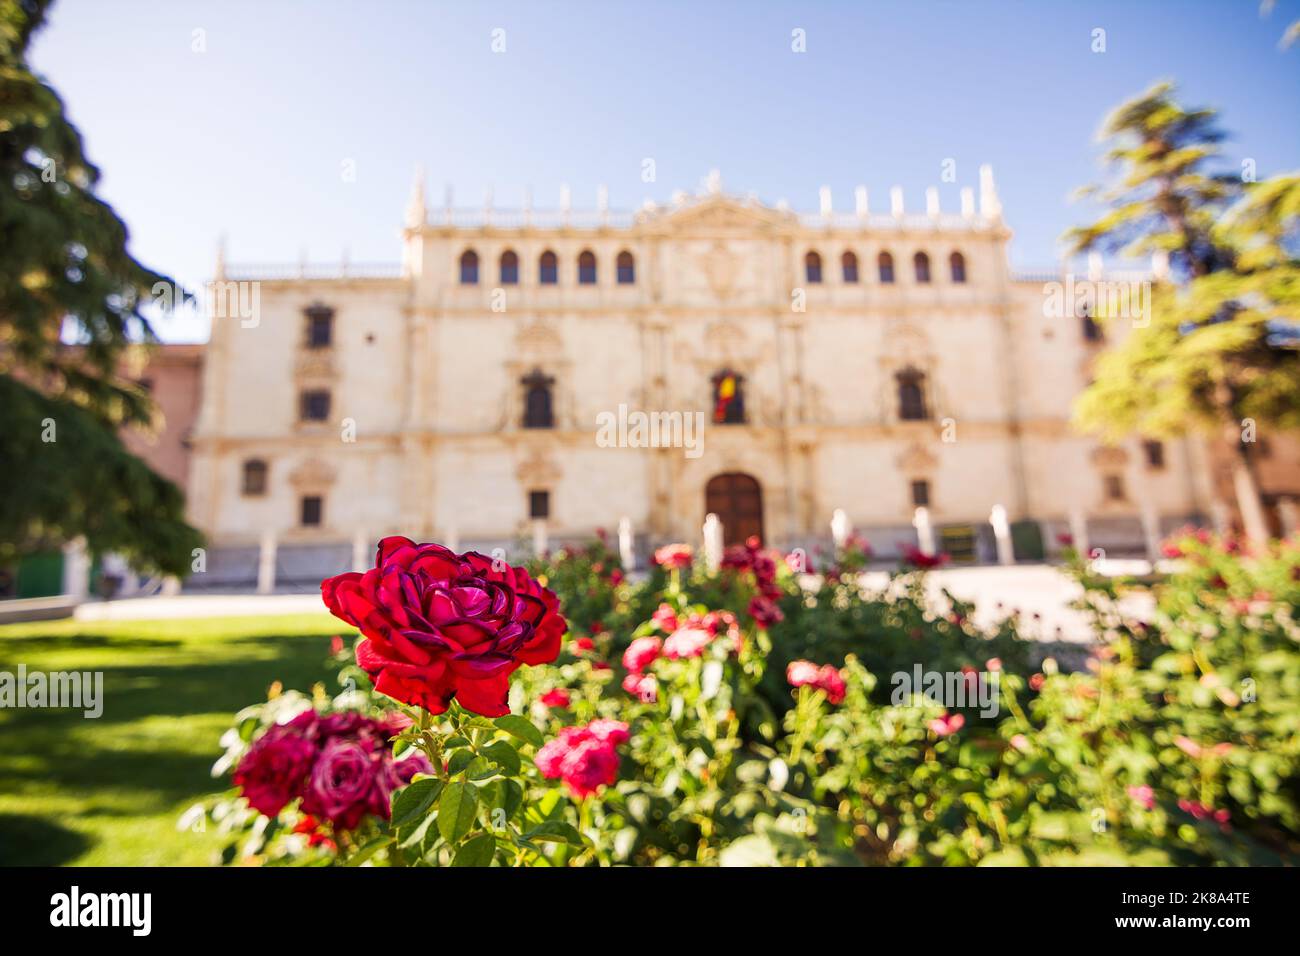 Fachada del edificio del Colegio de San Ildefonso, sede de la Universidad de Alcalá de Henares y jardín de rosas en primer plano Foto de stock